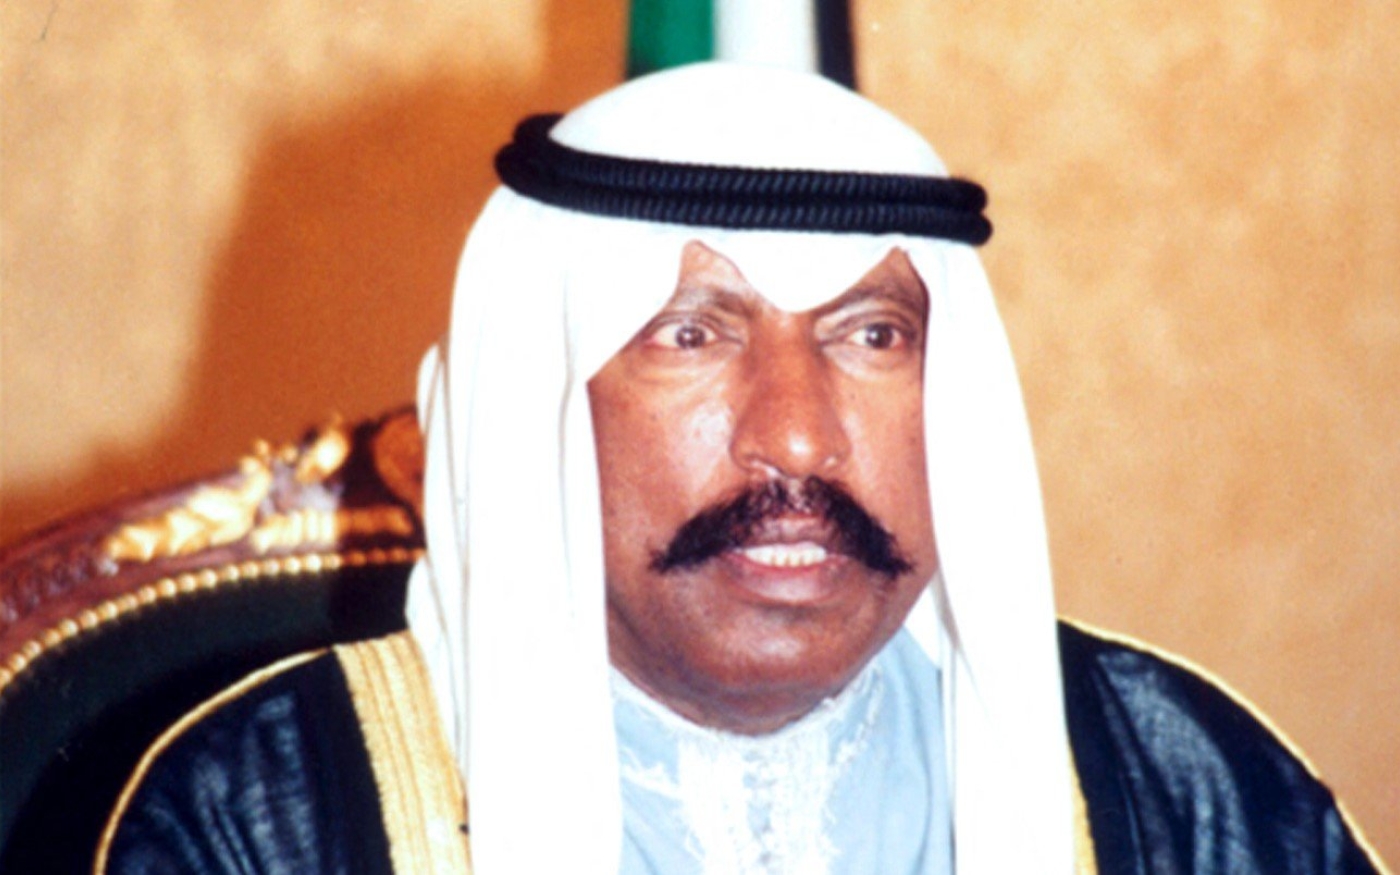 L’ancien Premier ministre koweïtien Saad al-Abdallah al-Salim al-Sabah est notamment représenté dans la série (AFP)